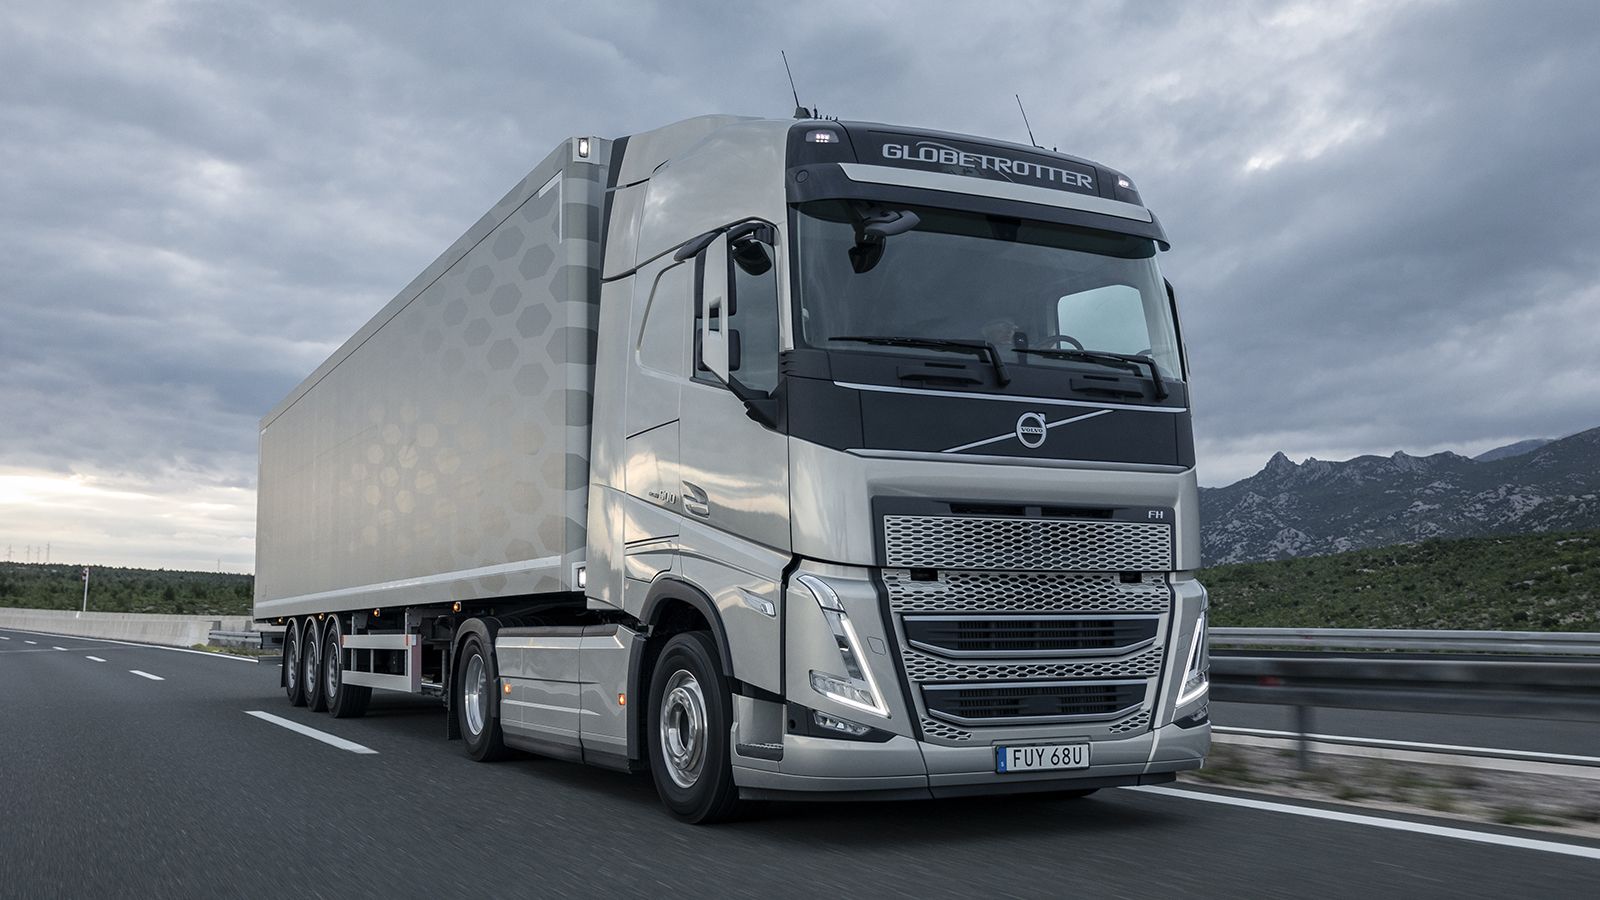 Το νέο FH, ο κορυφαίος τράκτορας της Volvo Trucks, είναι πλέον διαθέσιμο και στην Ελλάδα με εντυπωσιακή νέα σχεδίαση και τεχνολογικές καινοτομίες που αναβαθμίζουν την απόδοση του στο έπακρο!